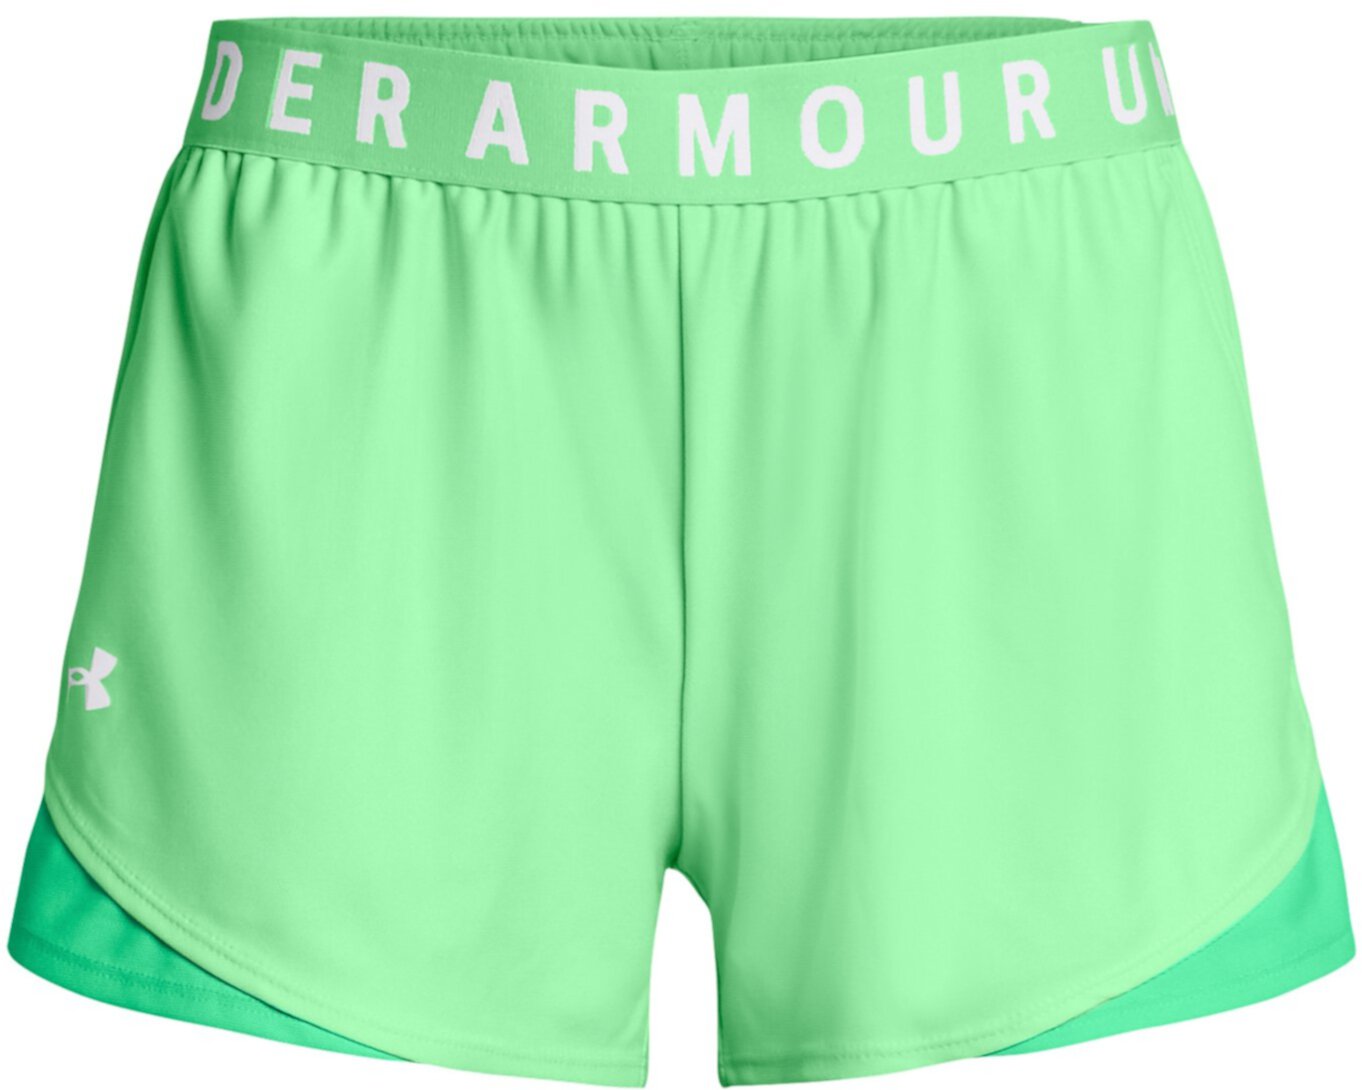 Казуальные шорты Play Up Shorts 3.0 от Under Armour для женщин Under Armour